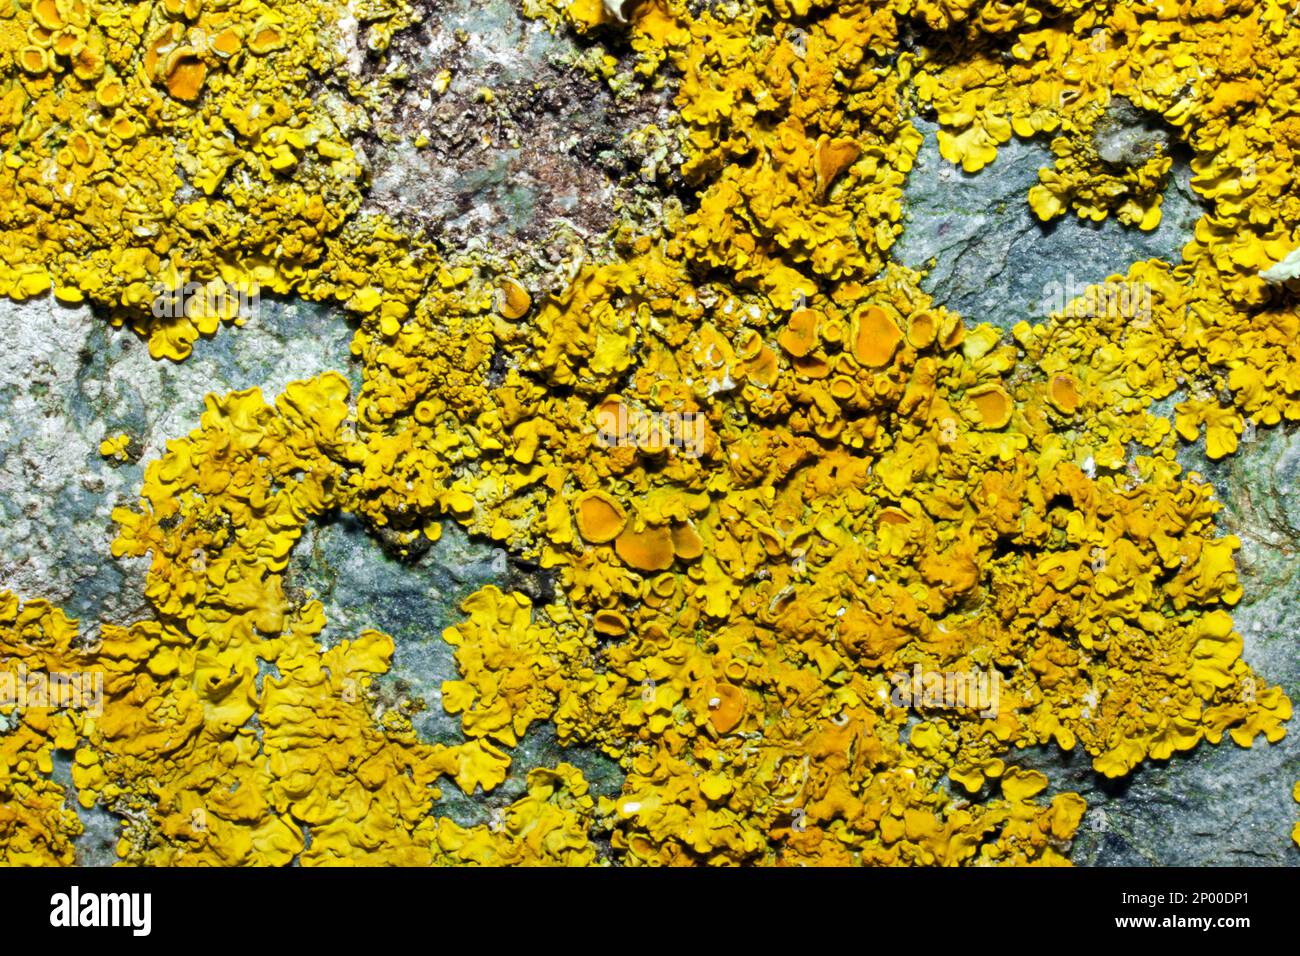 Xanthoria parietina (comune lichene arancione) si trova sulle rocce di riva al mare e sulle rocce interne o sulla corteccia di alberi. È una specie cosmopolita. Foto Stock